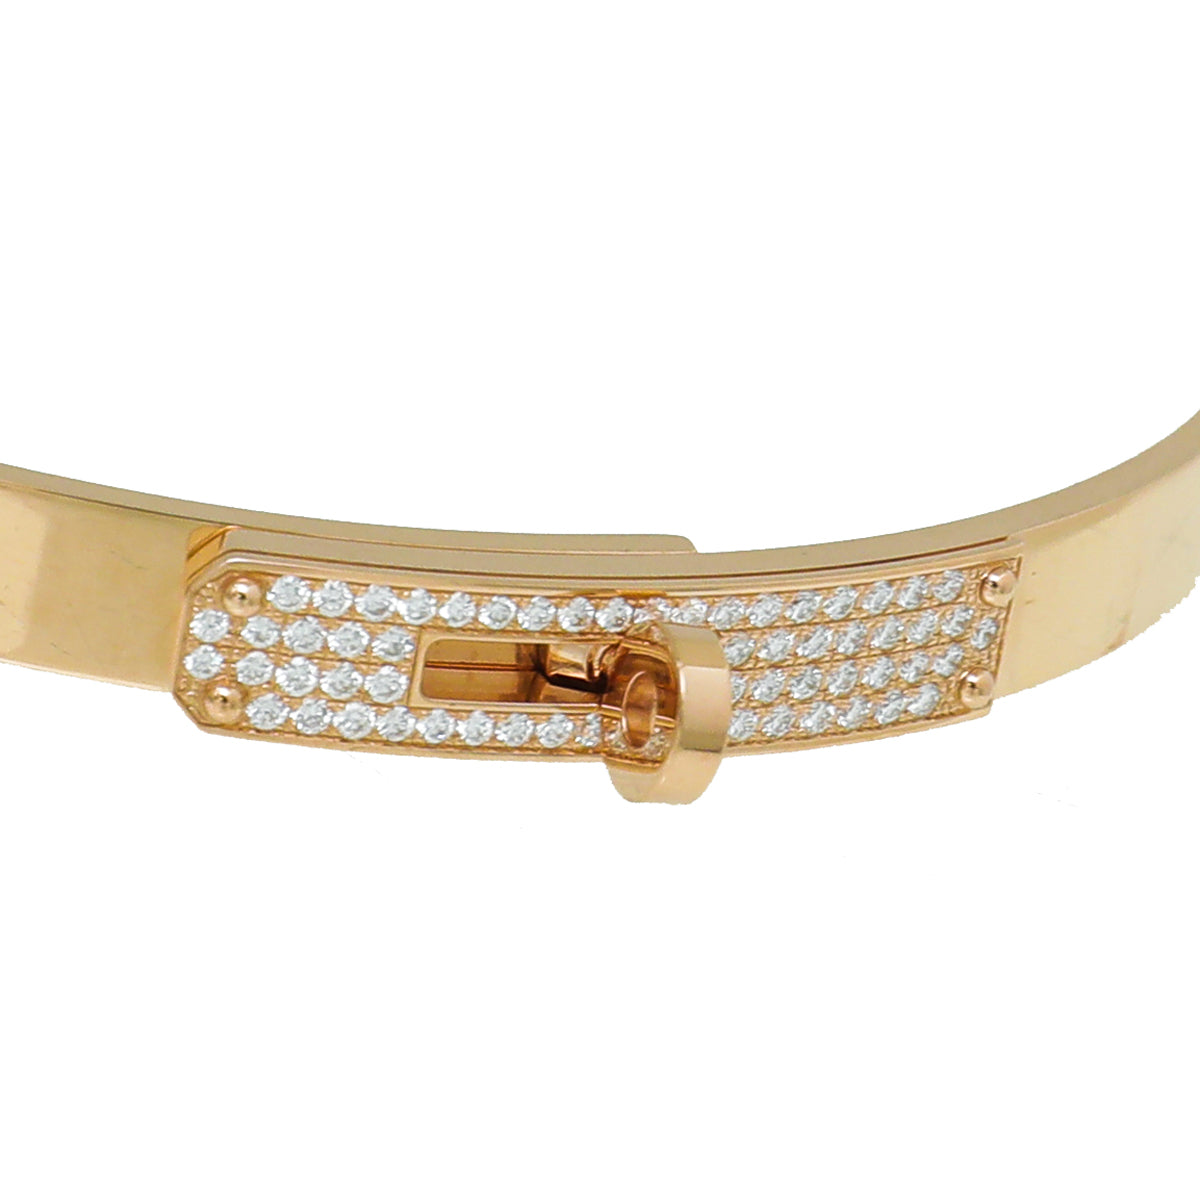 Hermès 18K Rose Gold and Diamond Kelly Bracelet